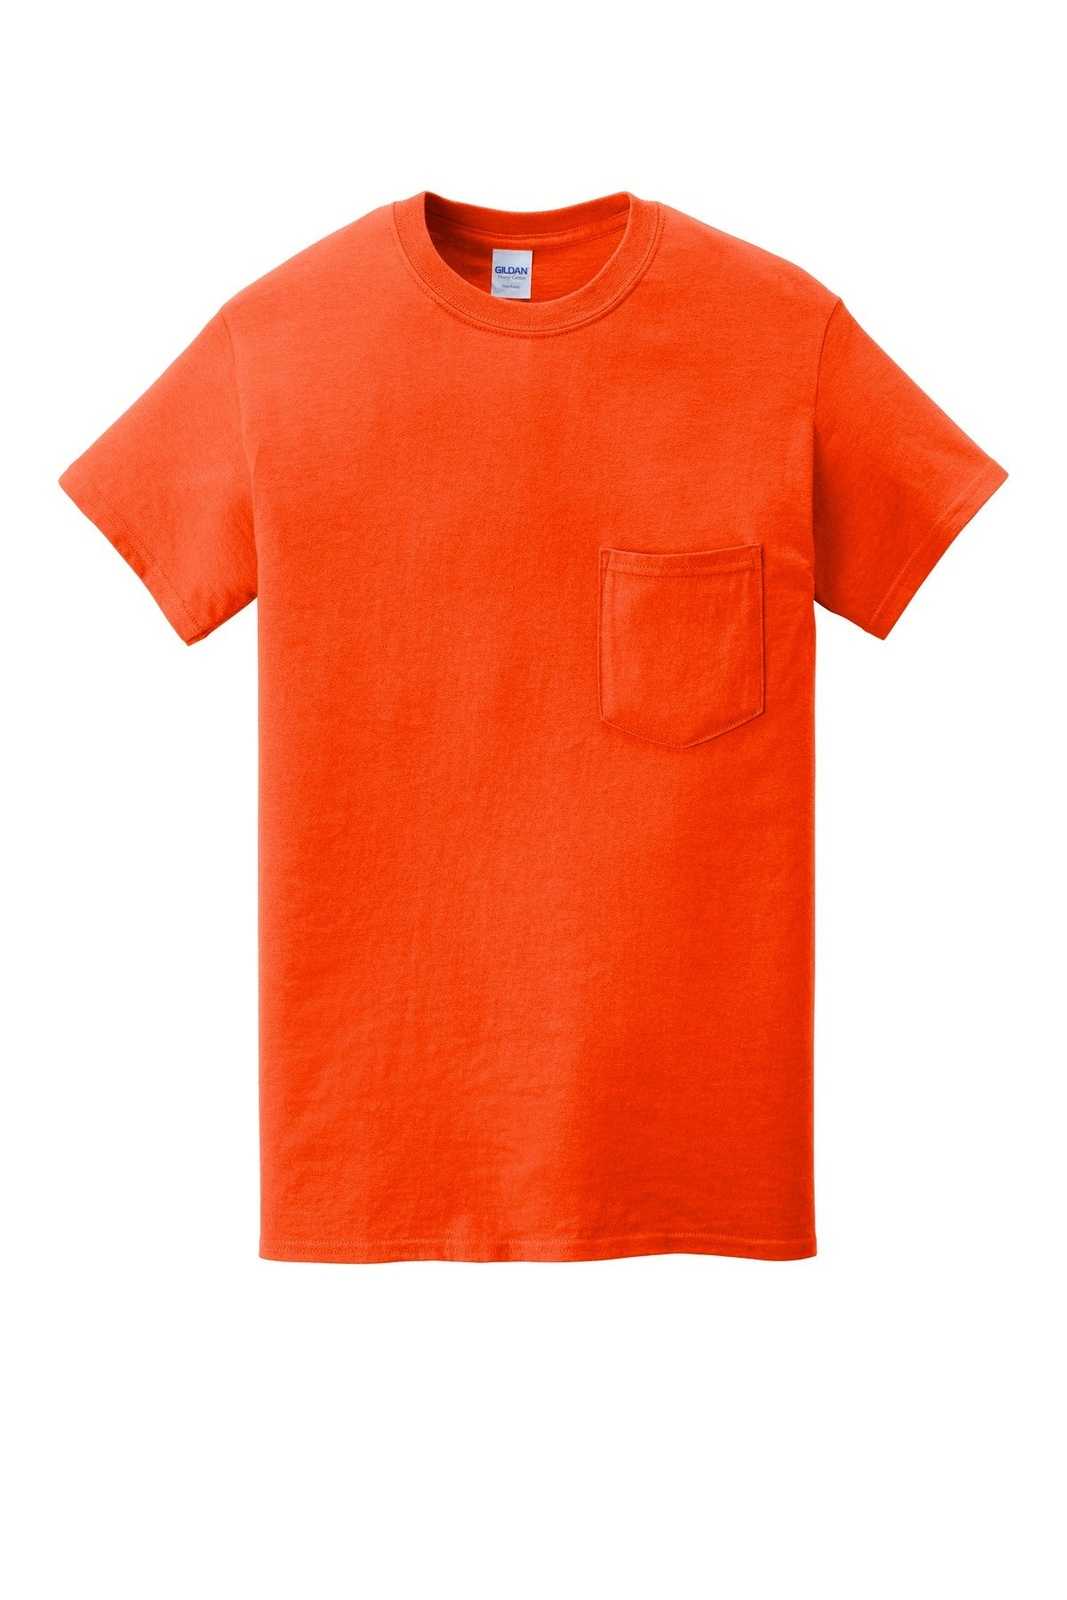 Gildan 5300 Heavy Cotton 100% Cotton Pocket T-Shirt - Orange - HIT a Double